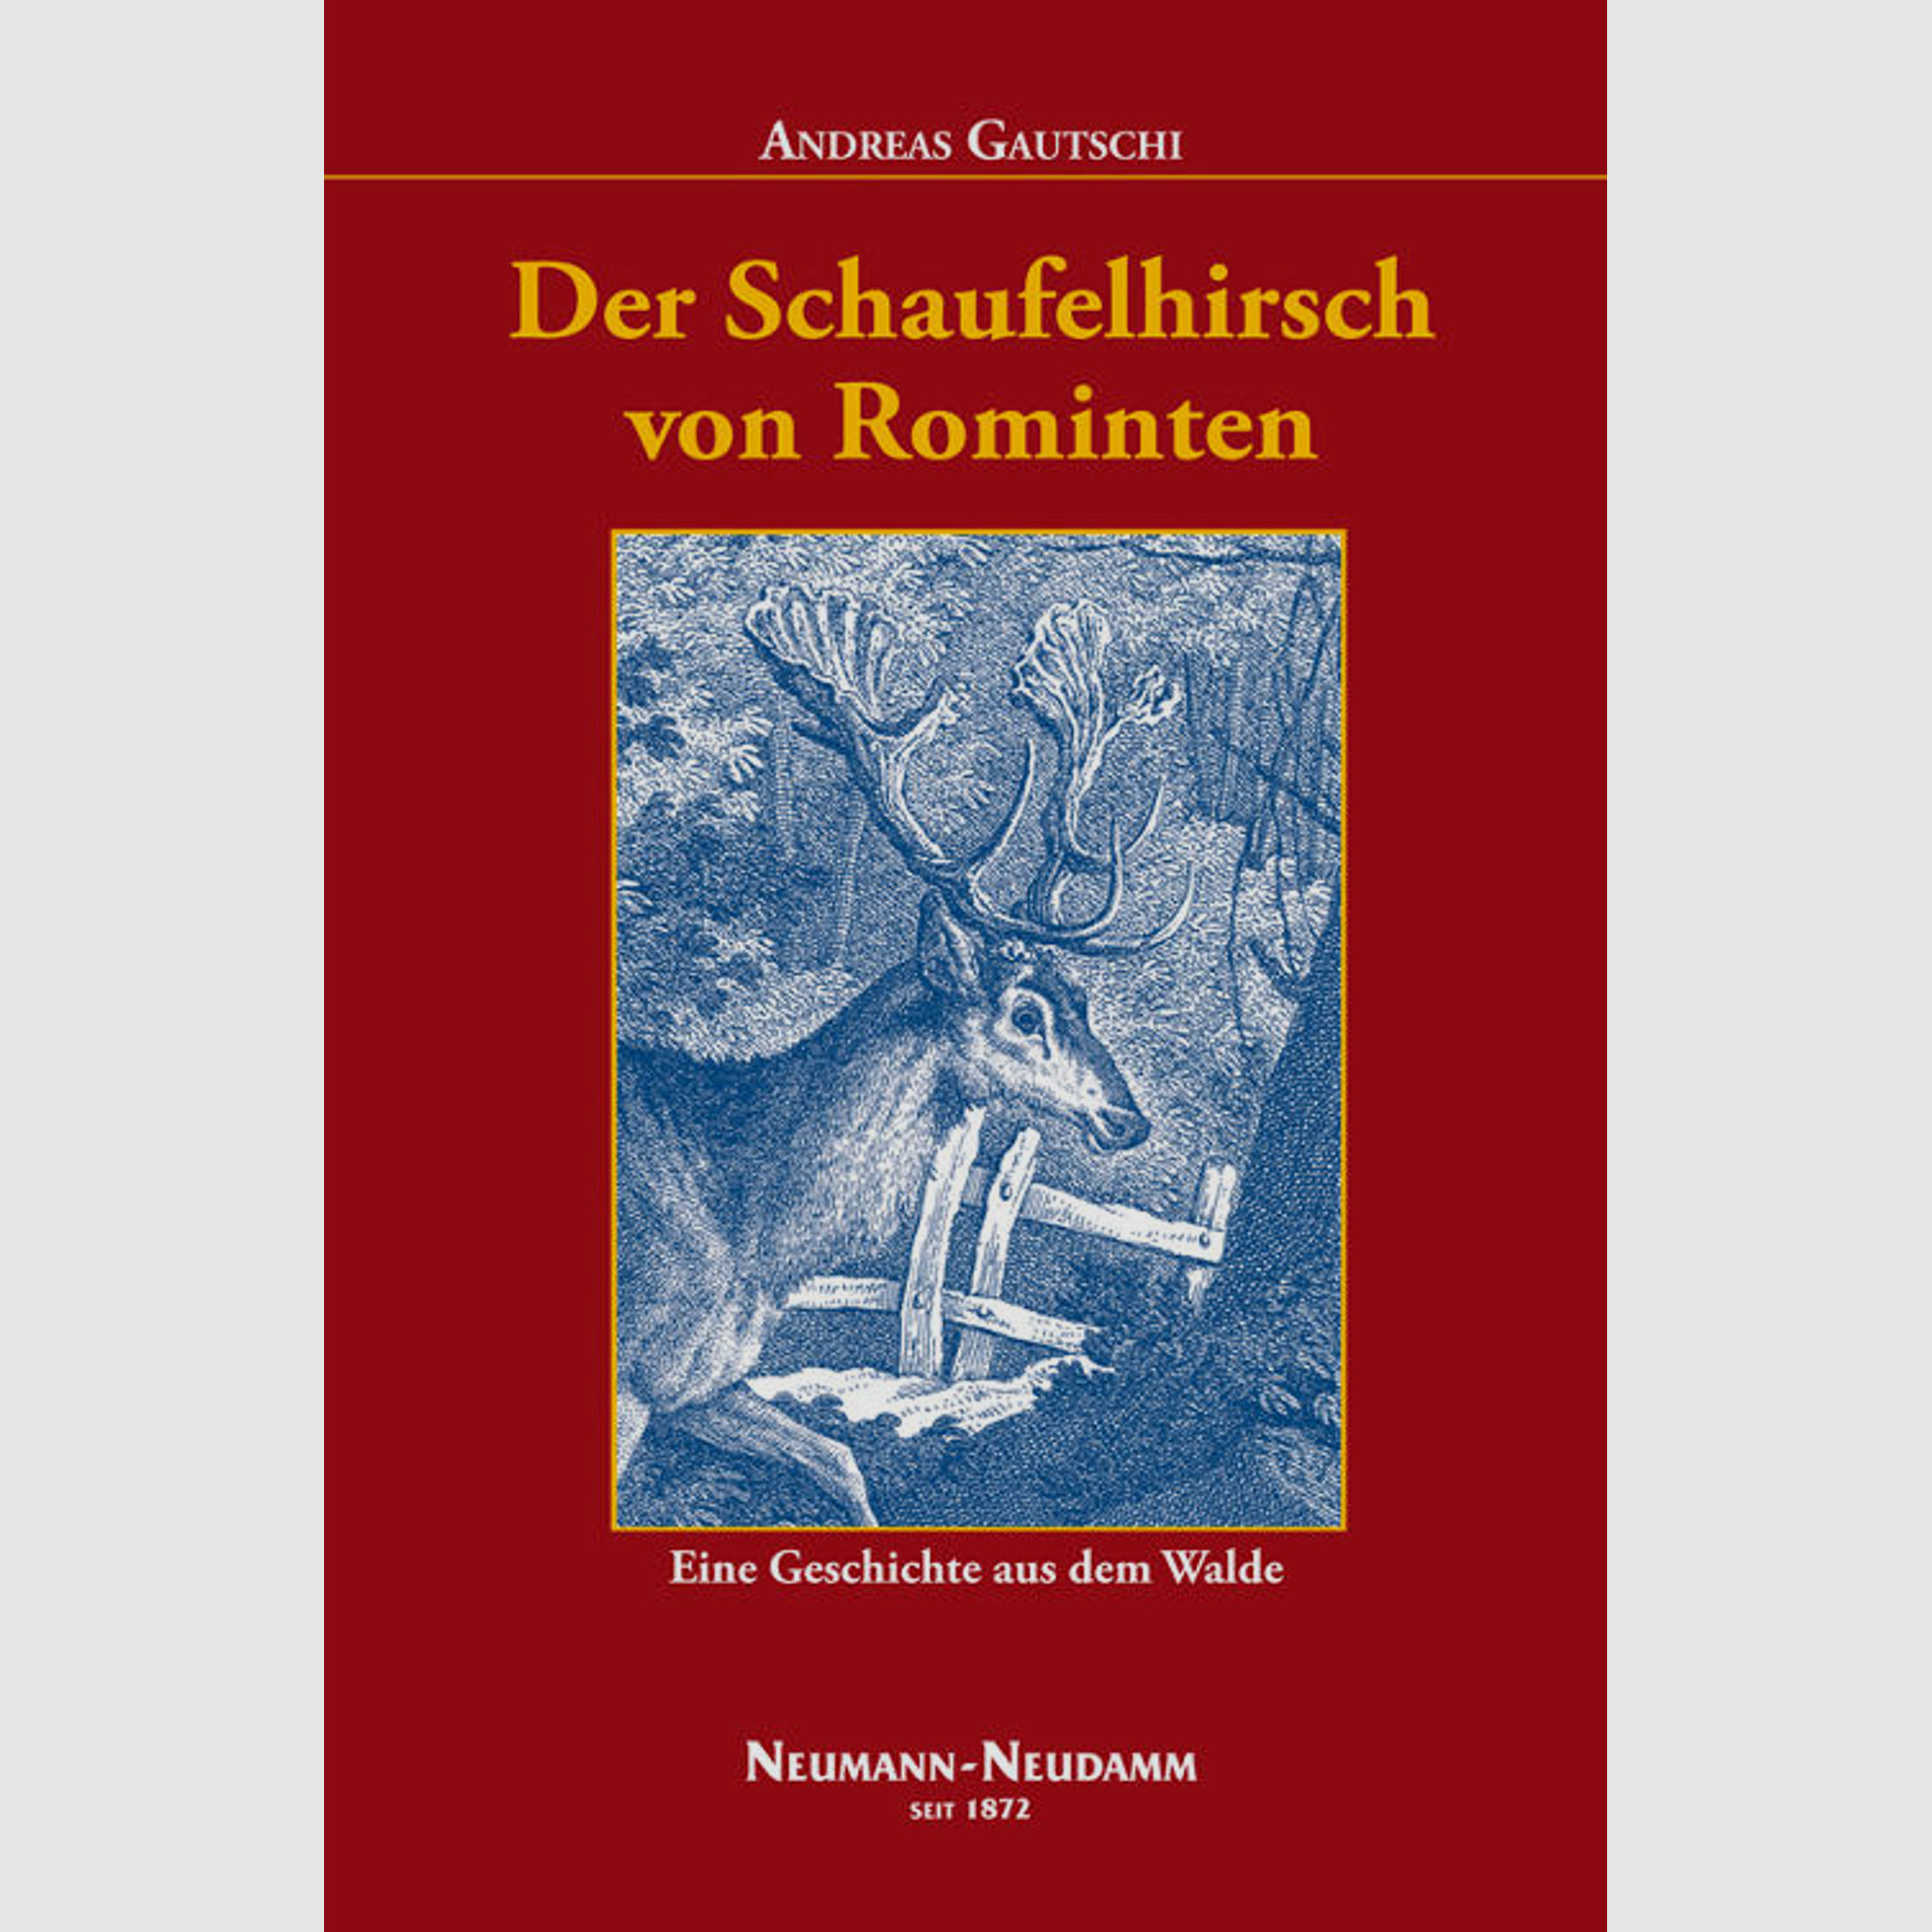 Der Schaufelhirsch von Rominten - Andreas Gautschi